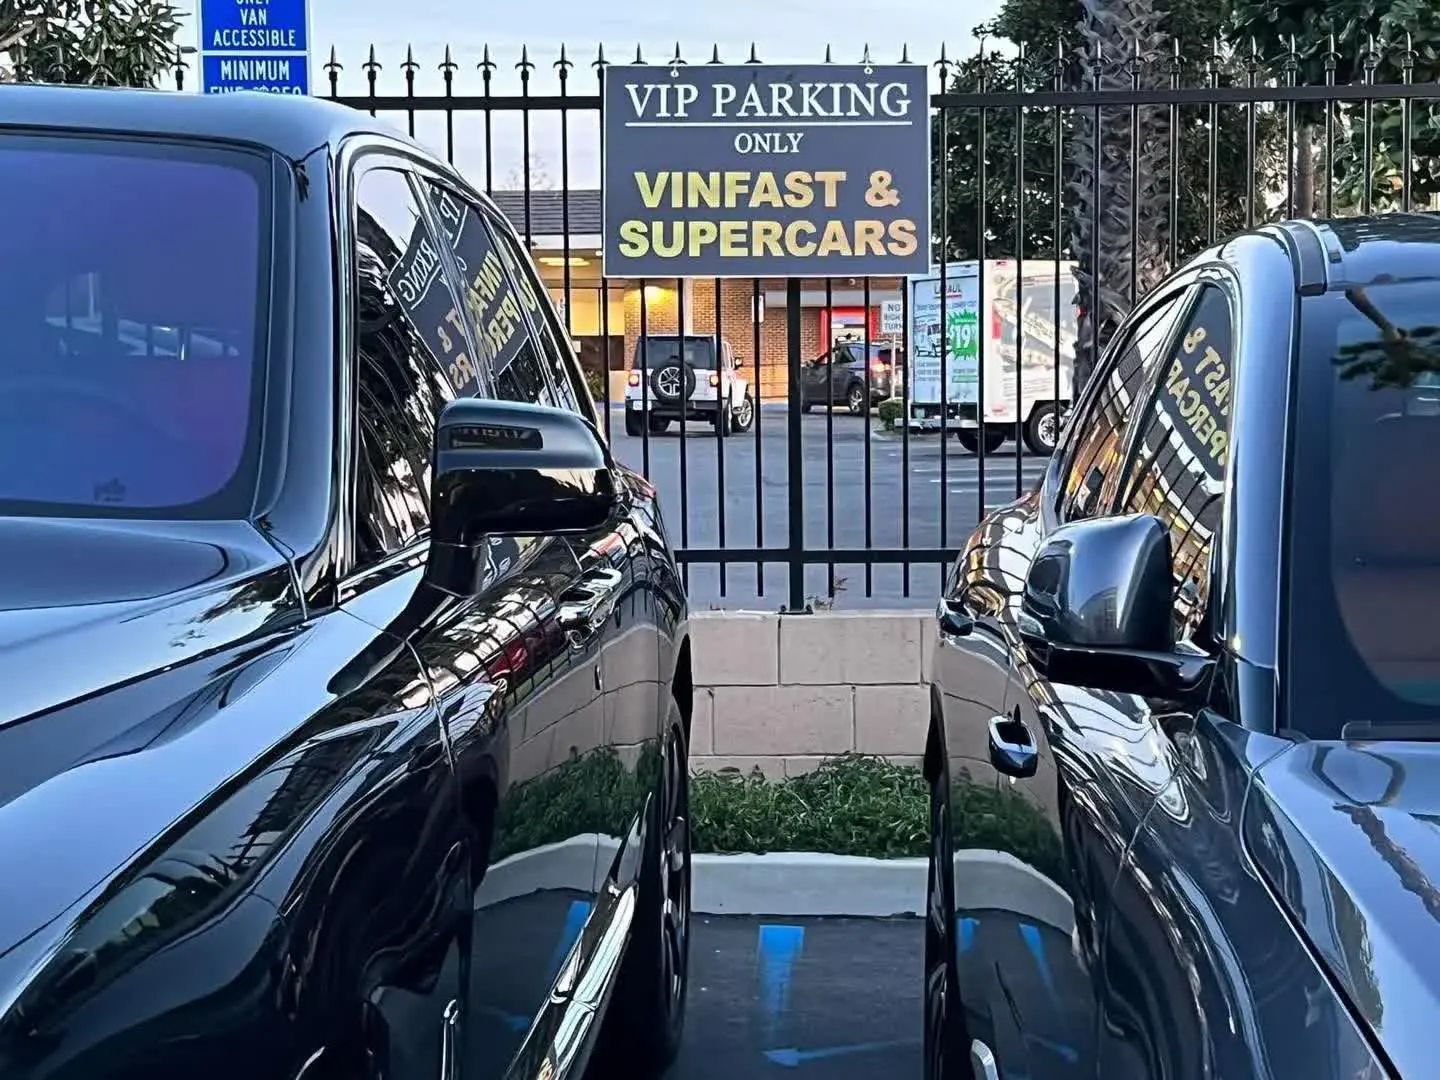 Làm bãi đỗ xe dành riêng cho VinFast và siêu xe, ông chủ gốc Việt chia sẻ: Muốn cho người Mỹ nhìn và chạm vào xe Việt Nam nhiều hơn - Ảnh 2.